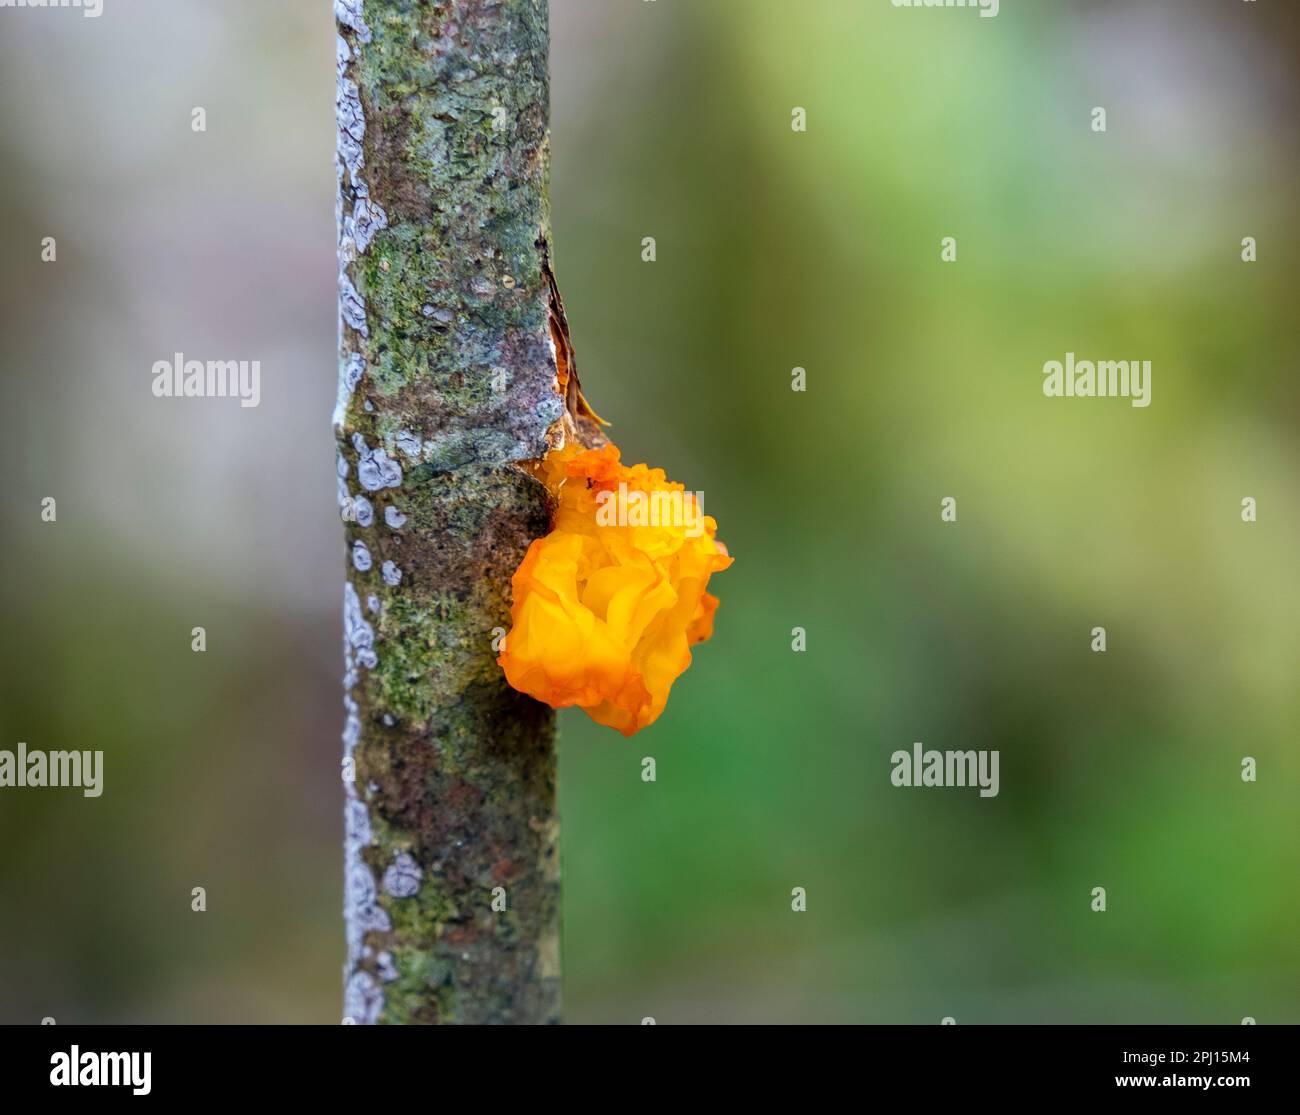 Colpo di primo piano di un fungo di gelatina d'oro ad un ramoscello in ambiente blurry Foto Stock